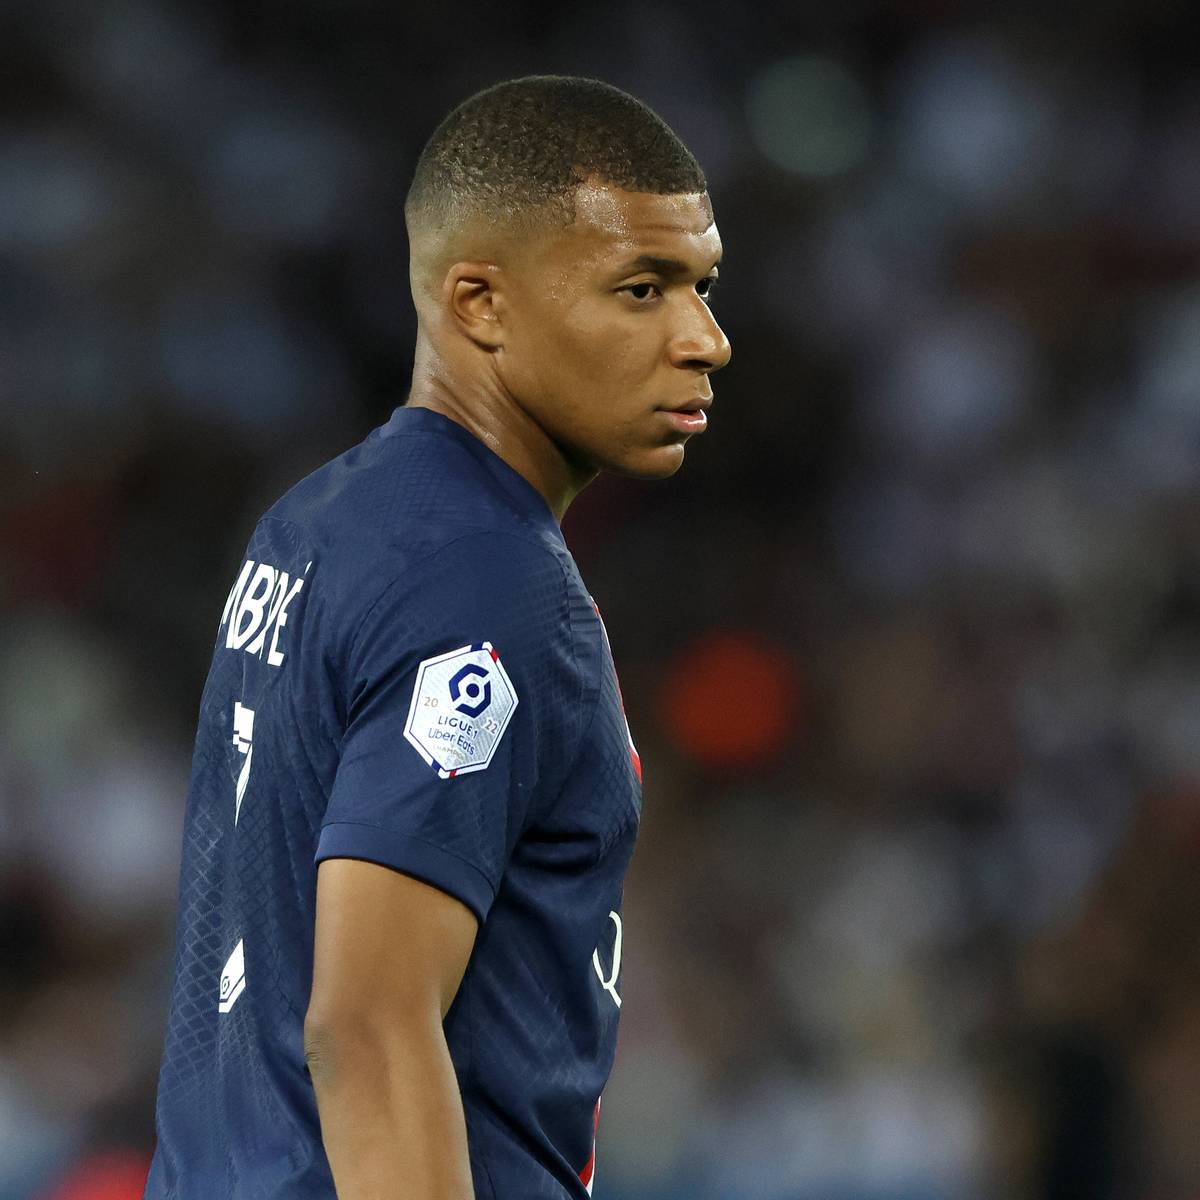 Hängt der Haussegen bei Paris St- Germain schief? Kylian Mbappé bricht einen eigenen Angriff ab und löst große Diskussionen aus.